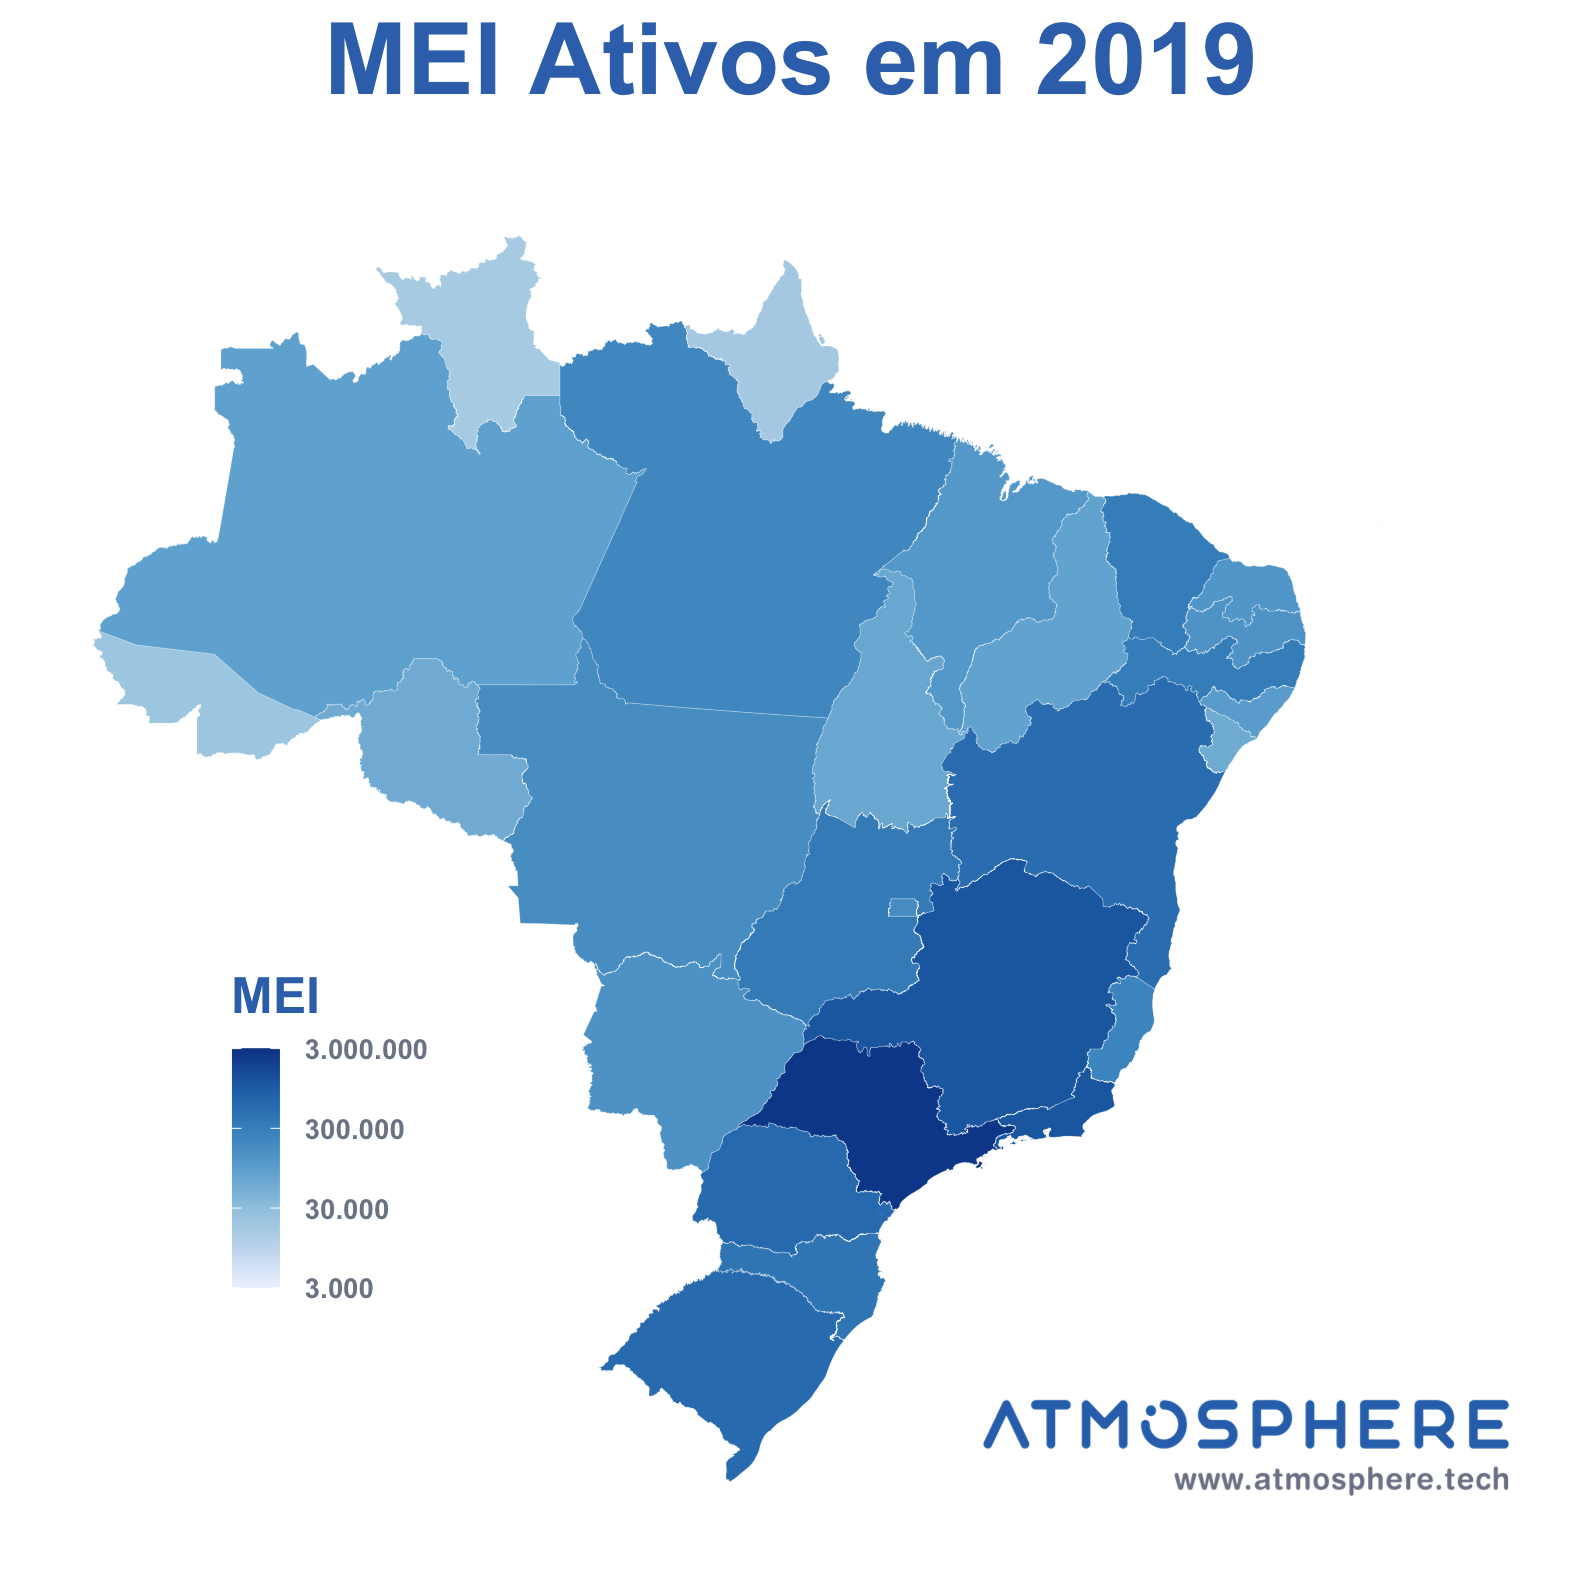 Atmosphere Mapa de MEI Ativos por estado em 2019